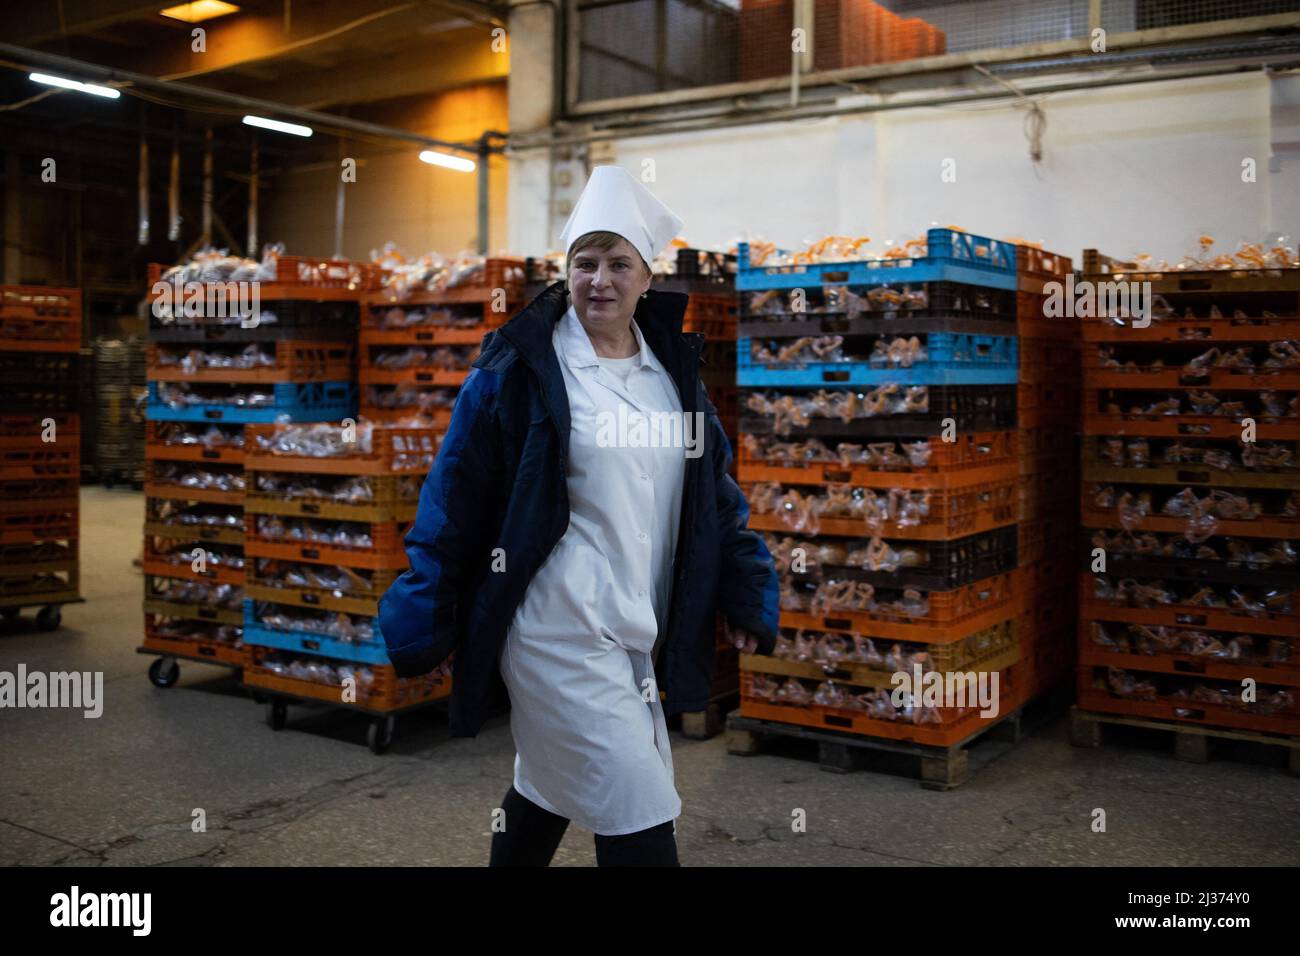 die vizepräsidentin der Bäckerei Natalia stellt die Bäckerei vor. Eine Bäckerei macht Brot im Obolon-Bezirk, während des Krieges stellen 49 Mitarbeiter, darunter Ukrainer, Russen und lybische Angestellte, am 28. März 2022 während der russischen Invasion der Ukraine in Kiew (Kiew) 120 Tonnen Brot pro Tag für die ukrainische Bevölkerung her. Foto von Raphael Lafargue/ABACAPRESS.COM Stockfoto